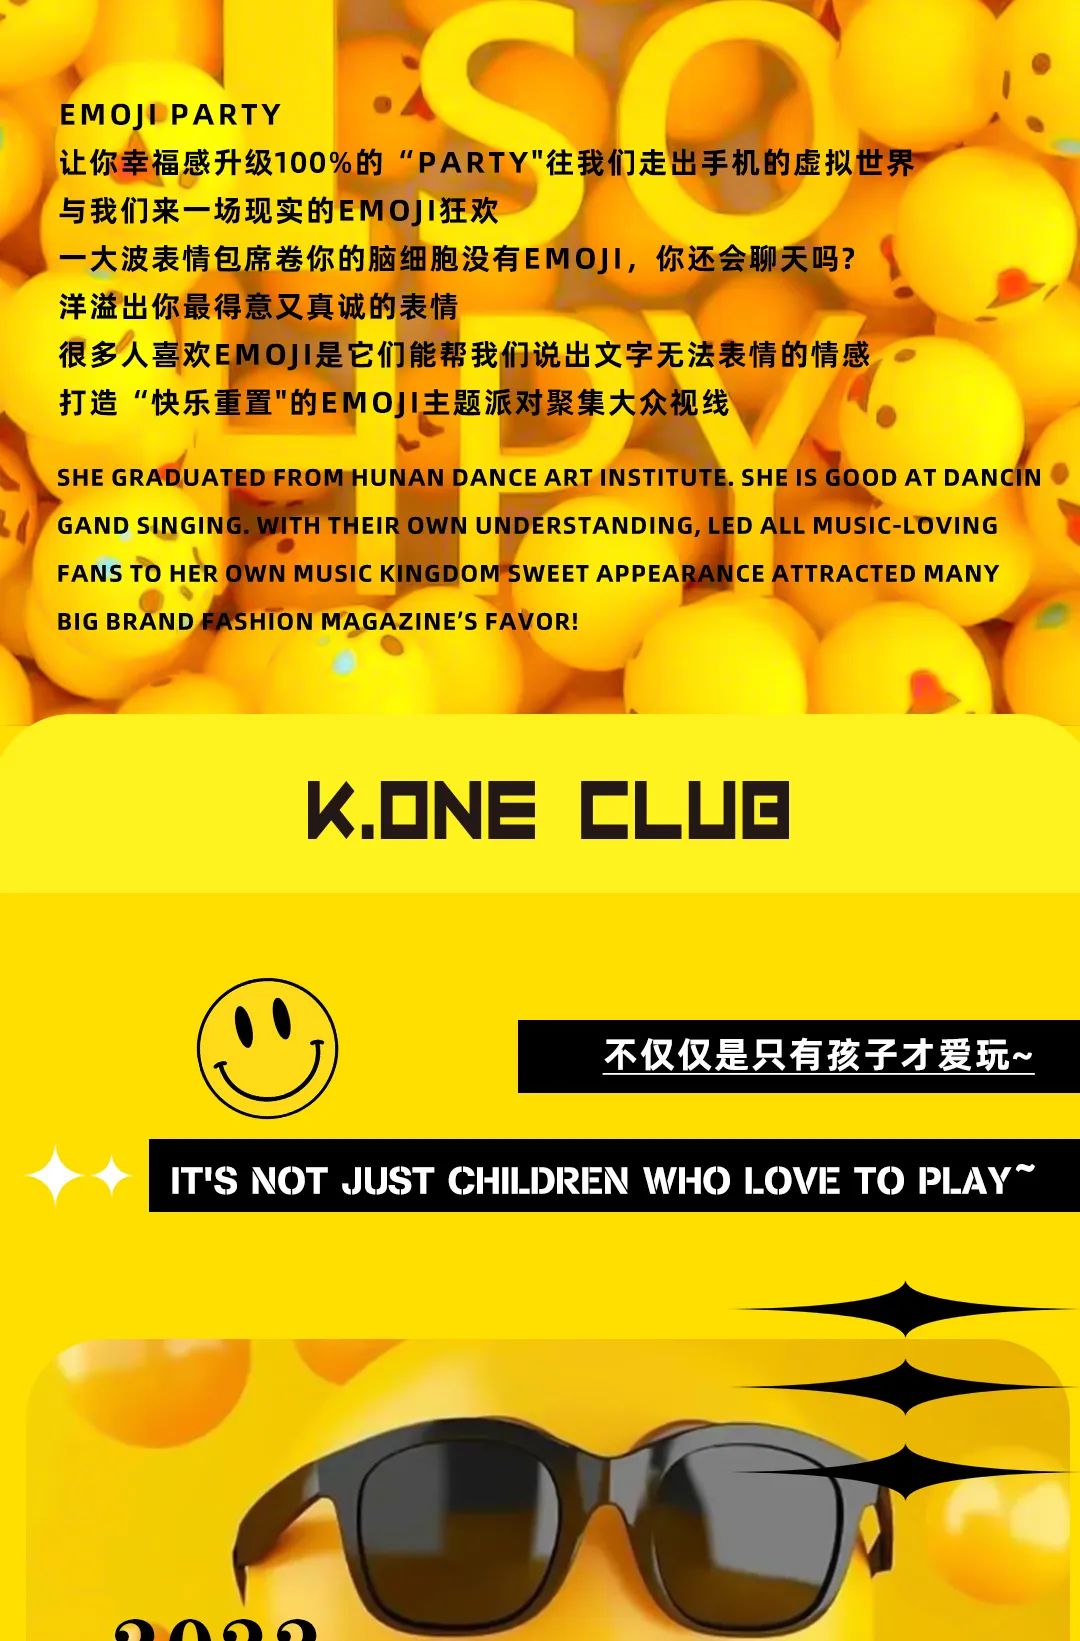 K.ONE CLUB丨2022.06.01-06.02 置身黄色海洋一起畅享，重置你的快乐.承包你的笑脸- 置身黄色海洋一起畅享-厦门KO酒吧/KONE CLUB